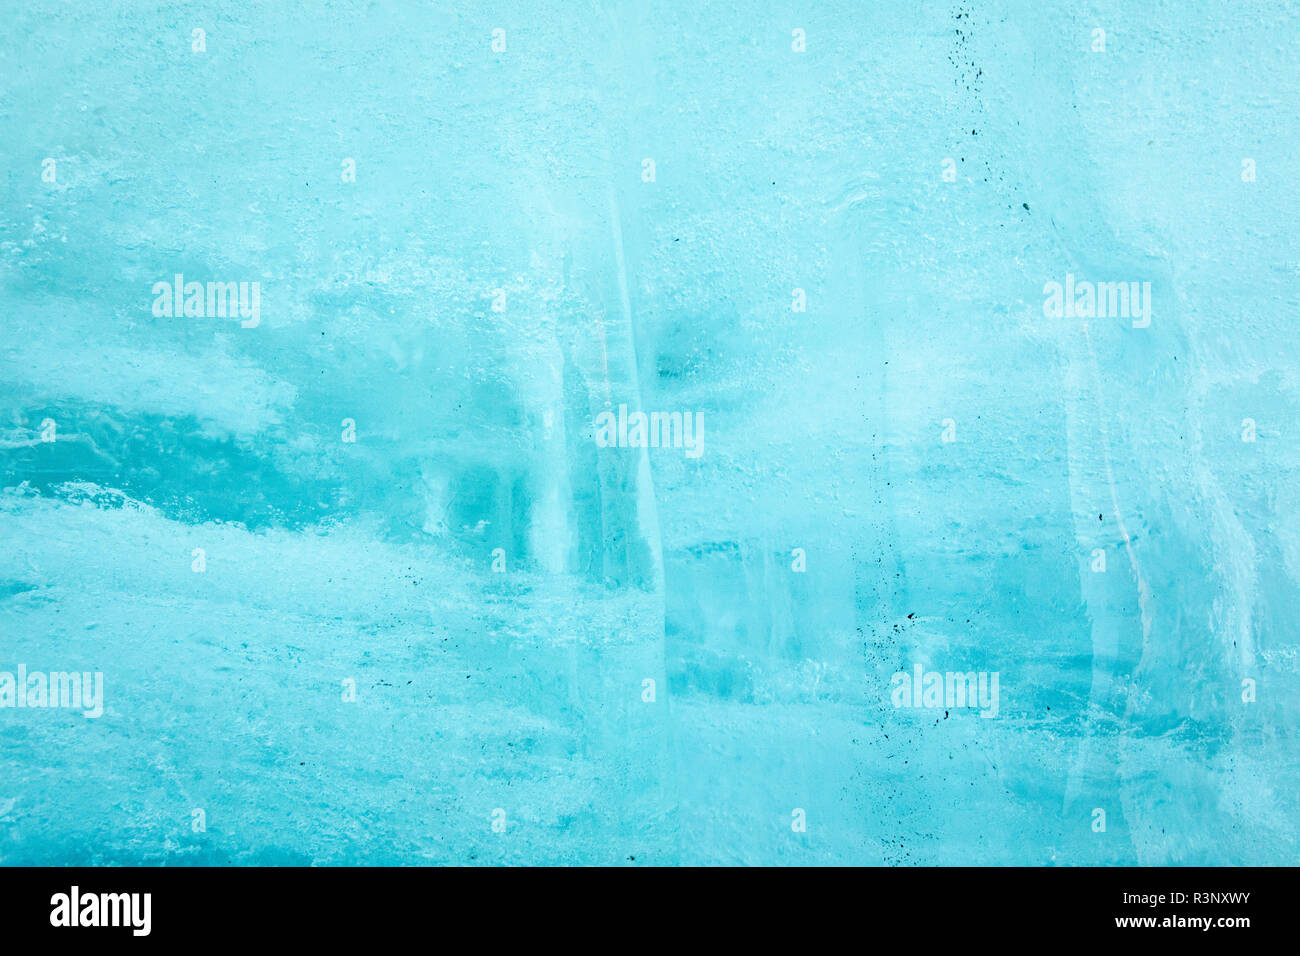 Luftblasen in Blue Ice im ICE-Tunnel an der Mündung der Rhonegletscher. Riesige Blätter mit Fleece Decken Decken eine ice-Tunnel an der Mündung der Rhone Gletscher in der Schweiz. Nach einem Winter mit viel Schnee, den meisten war es weg, wenn dieses Bild auf den 14. Juli 2018 getroffen wurde, so dass der dunkler Eis. Während Schnee eine brillante Reflektor ist der Energie von der Sonne, der dunkler Eis nimmt die Energie statt, beschleunigt das Abschmelzen der Gletscher. Die Farbe und der Dunkelheit von Gletschereis variieren in der ganzen Welt, je nach Aufbau der Verschmutzung, Alter des Eises, Partikel abgeholt Stockfoto